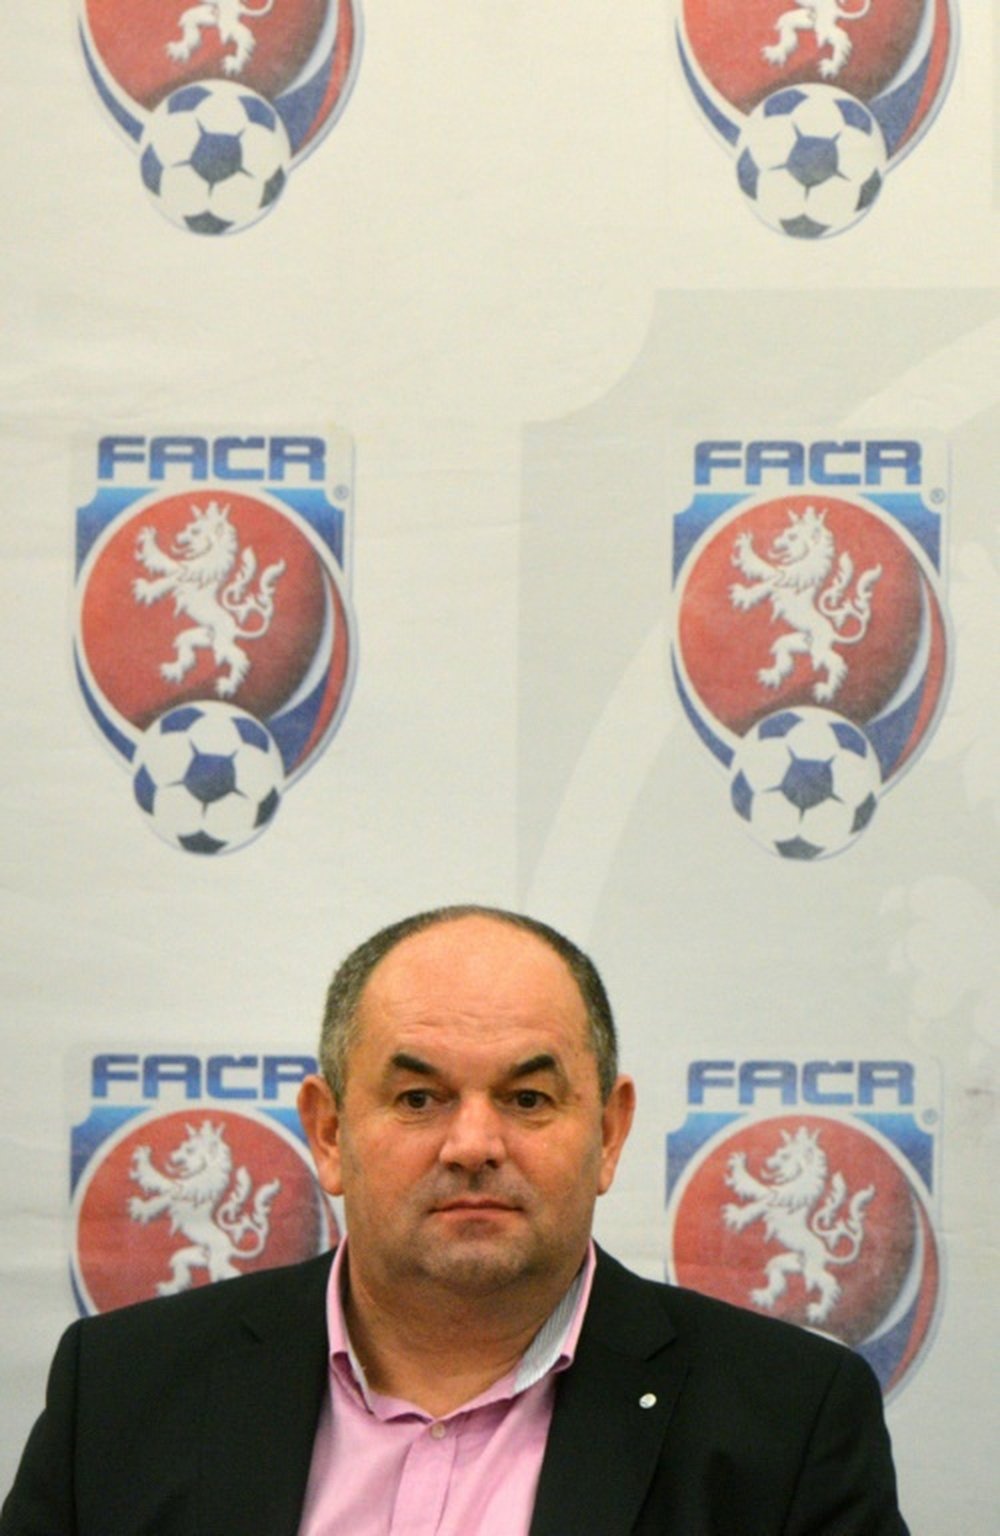 Miroslav Pelta, président de la Fédération tchèque de football (FACR), en conférence de presse. AFP